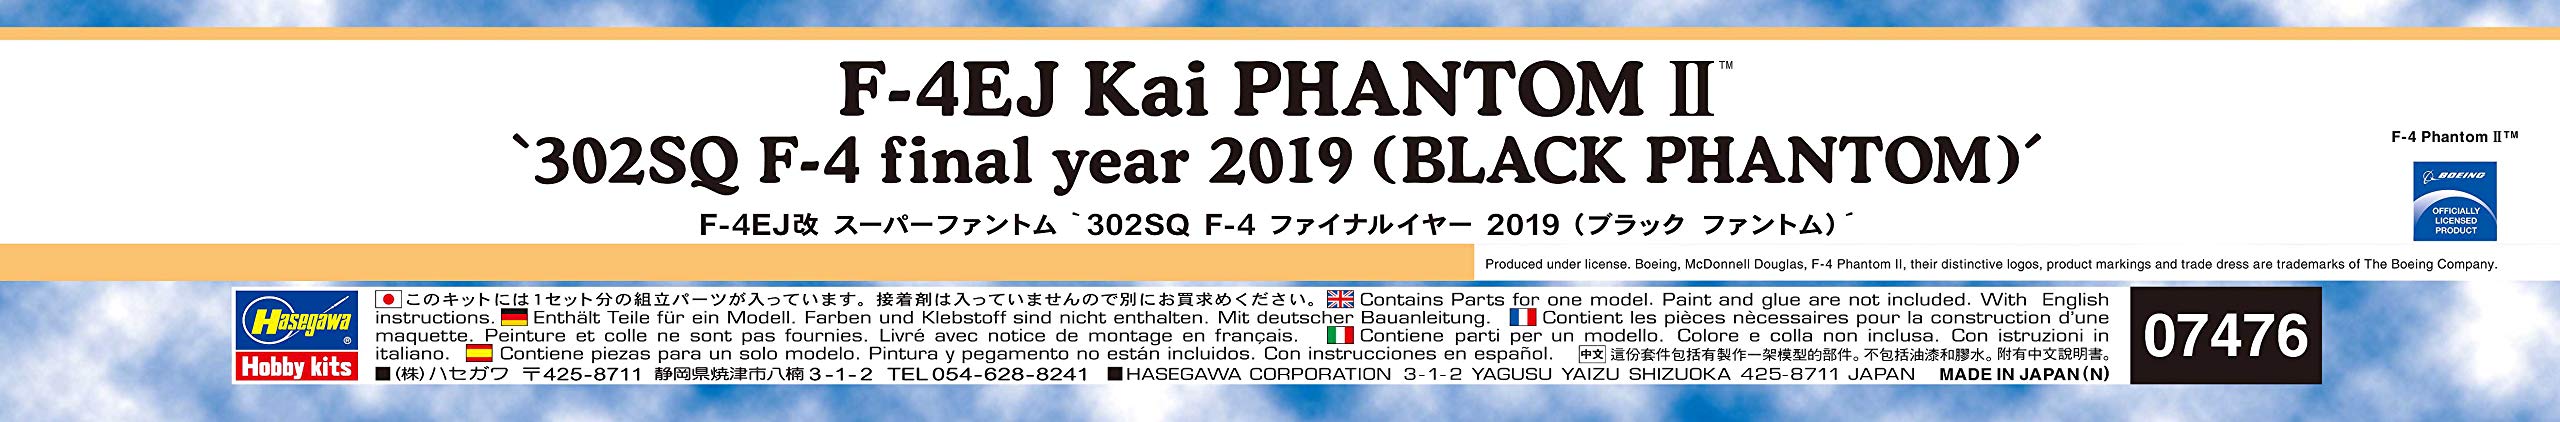 HASEGAWA 07476 F-4Ej Kai Super Phantom 302Sq F-4 Final Year 2019 Black Phantom Bausatz im Maßstab 1:48